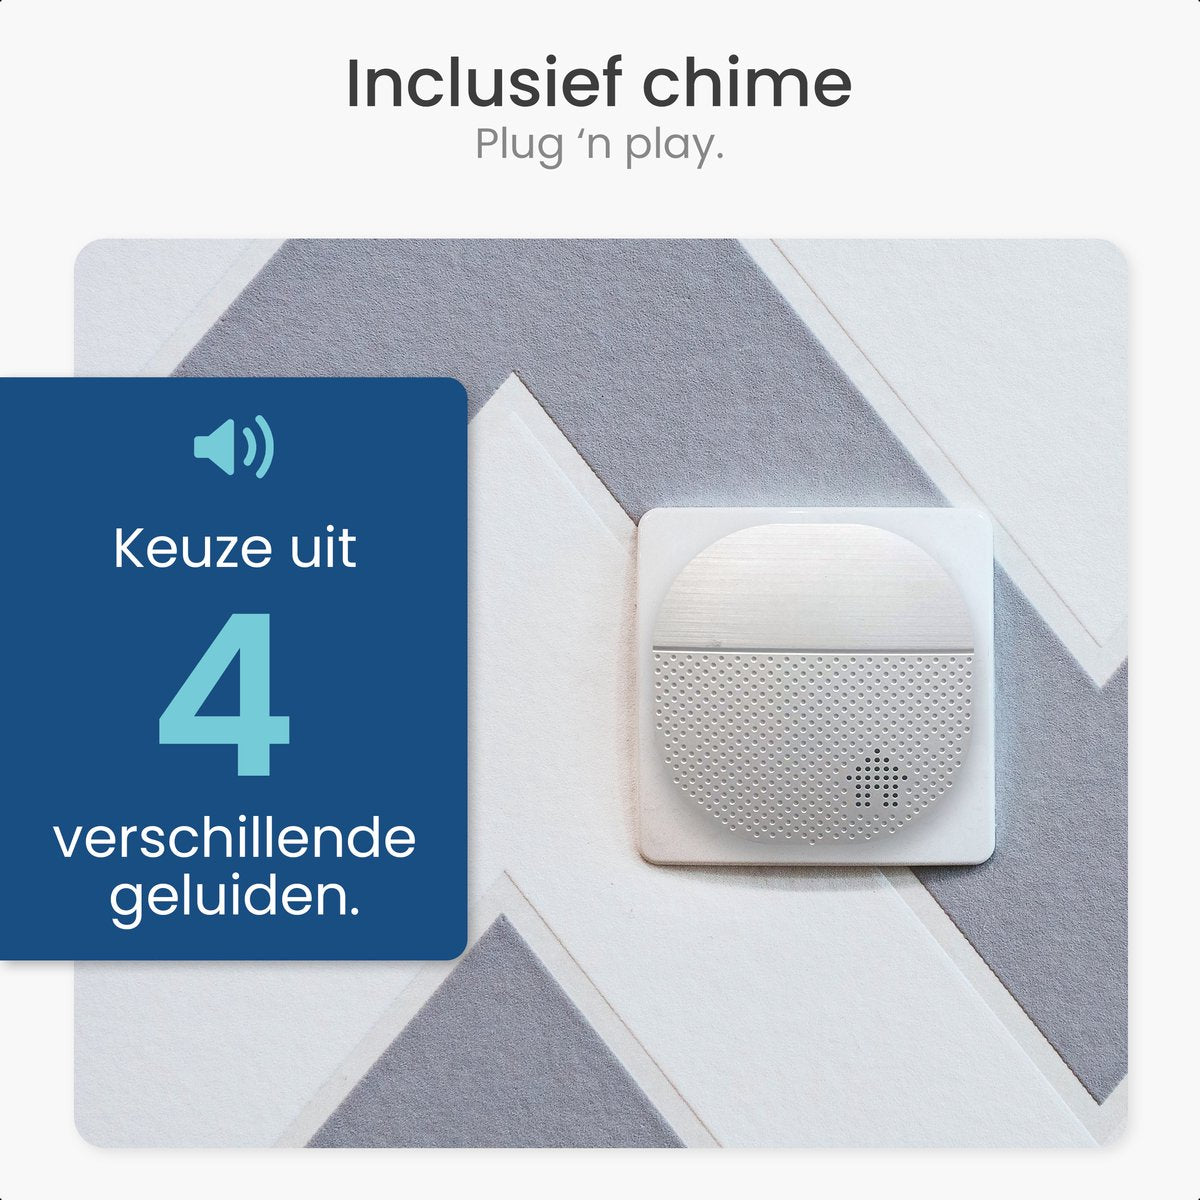 Gologi draadloze deurbel - HD Video Deurbel - Met Camera en WiFi - Inclusief Gong - Nederlandstalige app - Waterdicht - Zwart